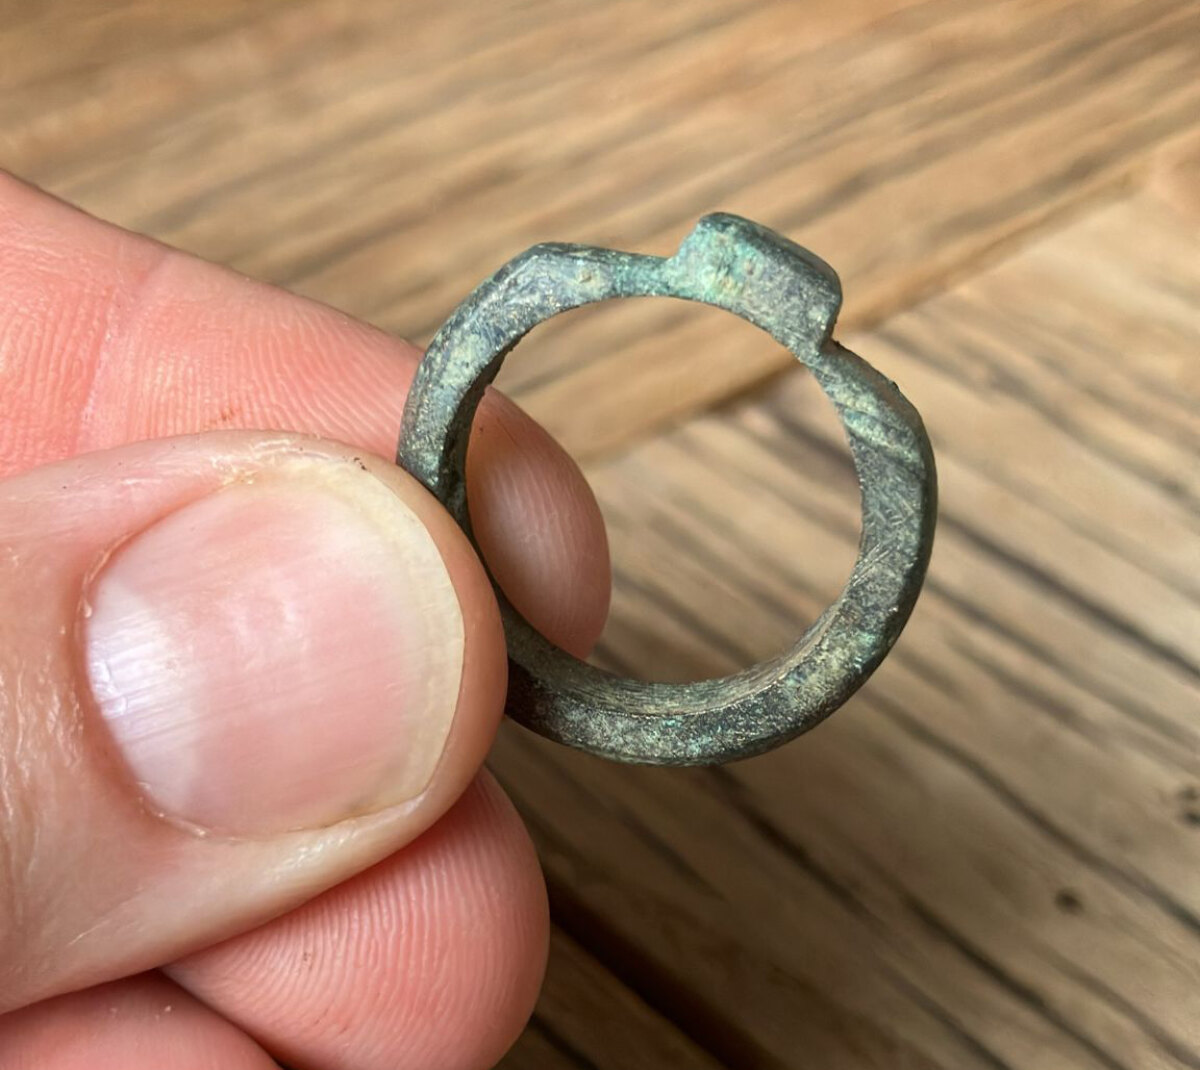 De door Pieter Trap gevonden ring. Foto: PT